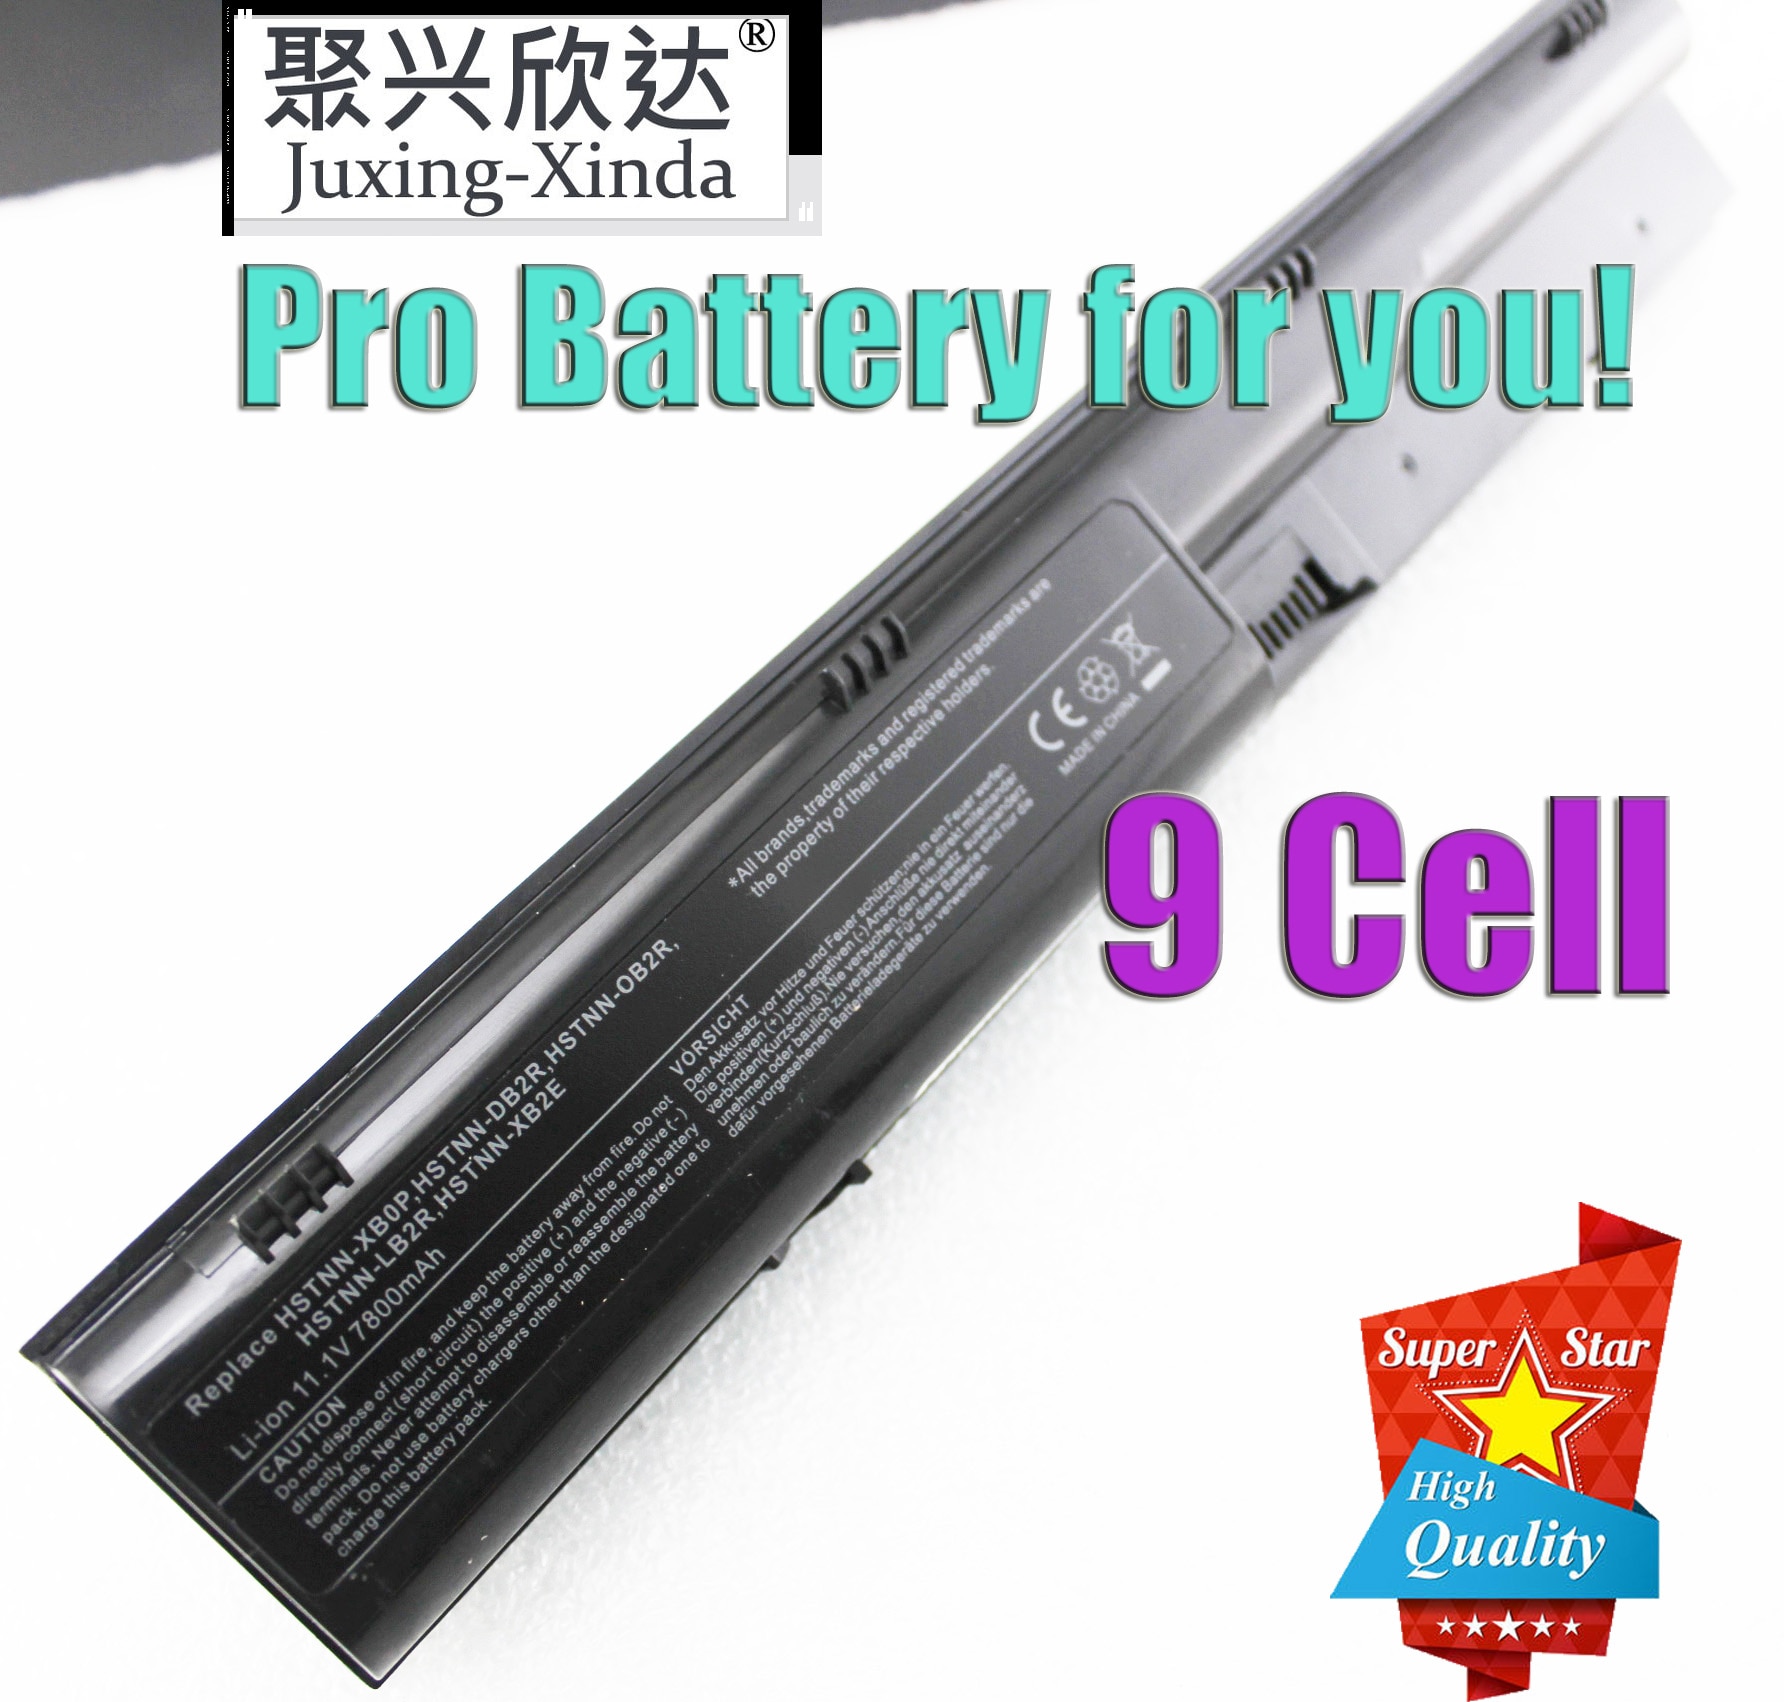 9 Cell Laptop Batterij Voor Hp Probook 4330 S 4430 S 4431 S 4530S 4331 S 4535 S 4435 S 4436 S 4440 S 4441 S 4540 S PR06 PR09 HSTNN-I02C DB2R